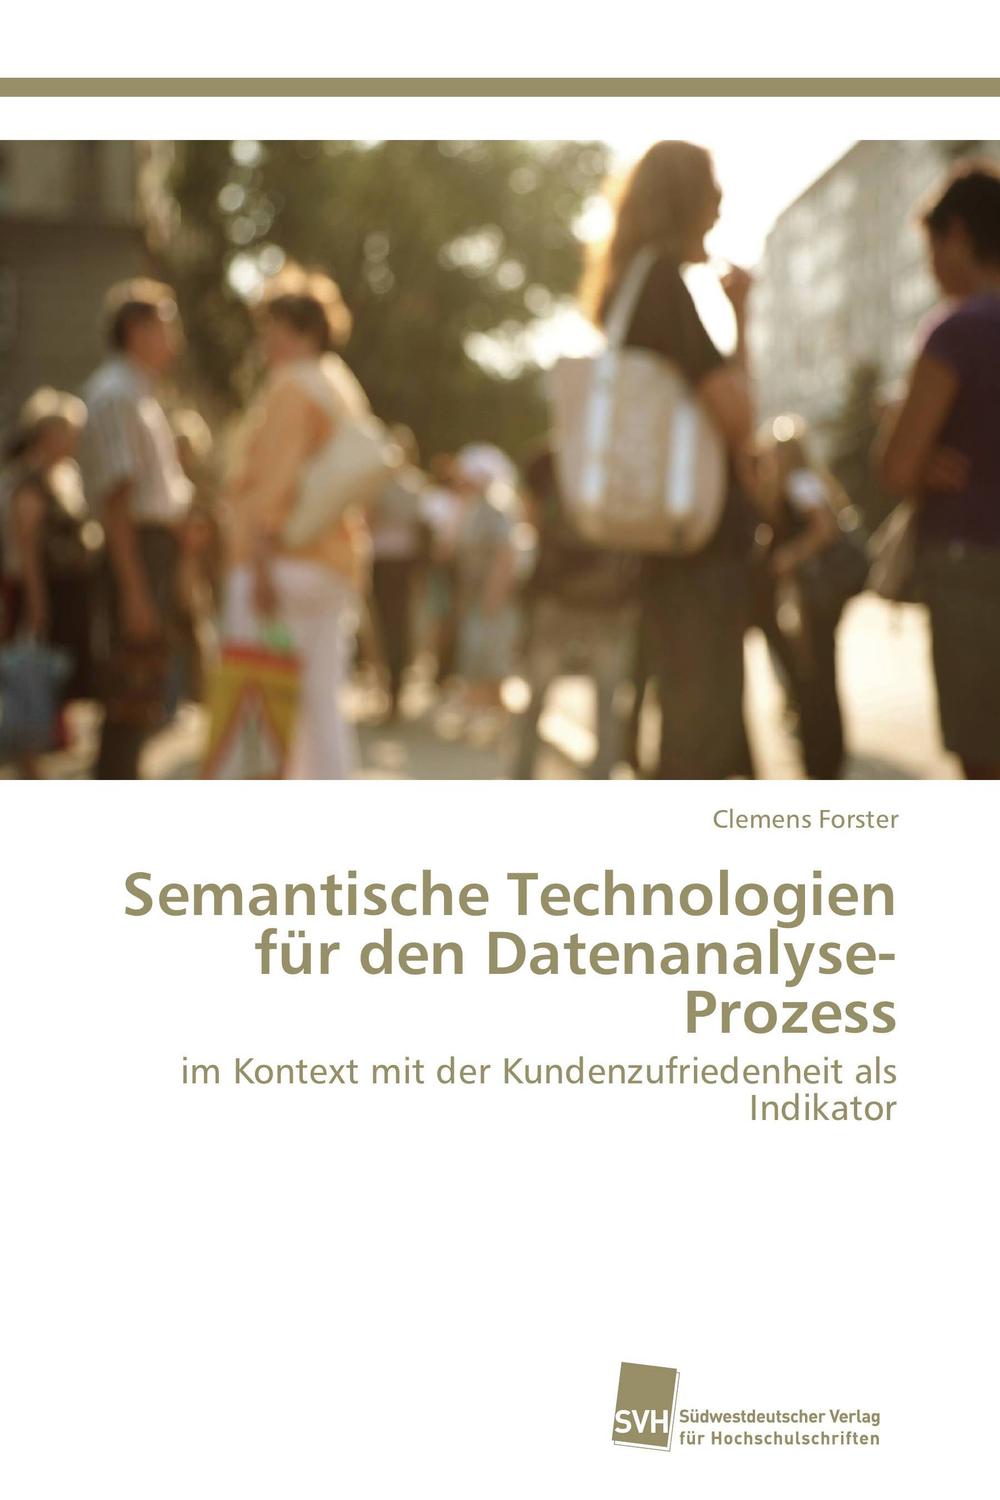 Semantische Technologien für den Datenanalyse-Prozess - Clemens Forster